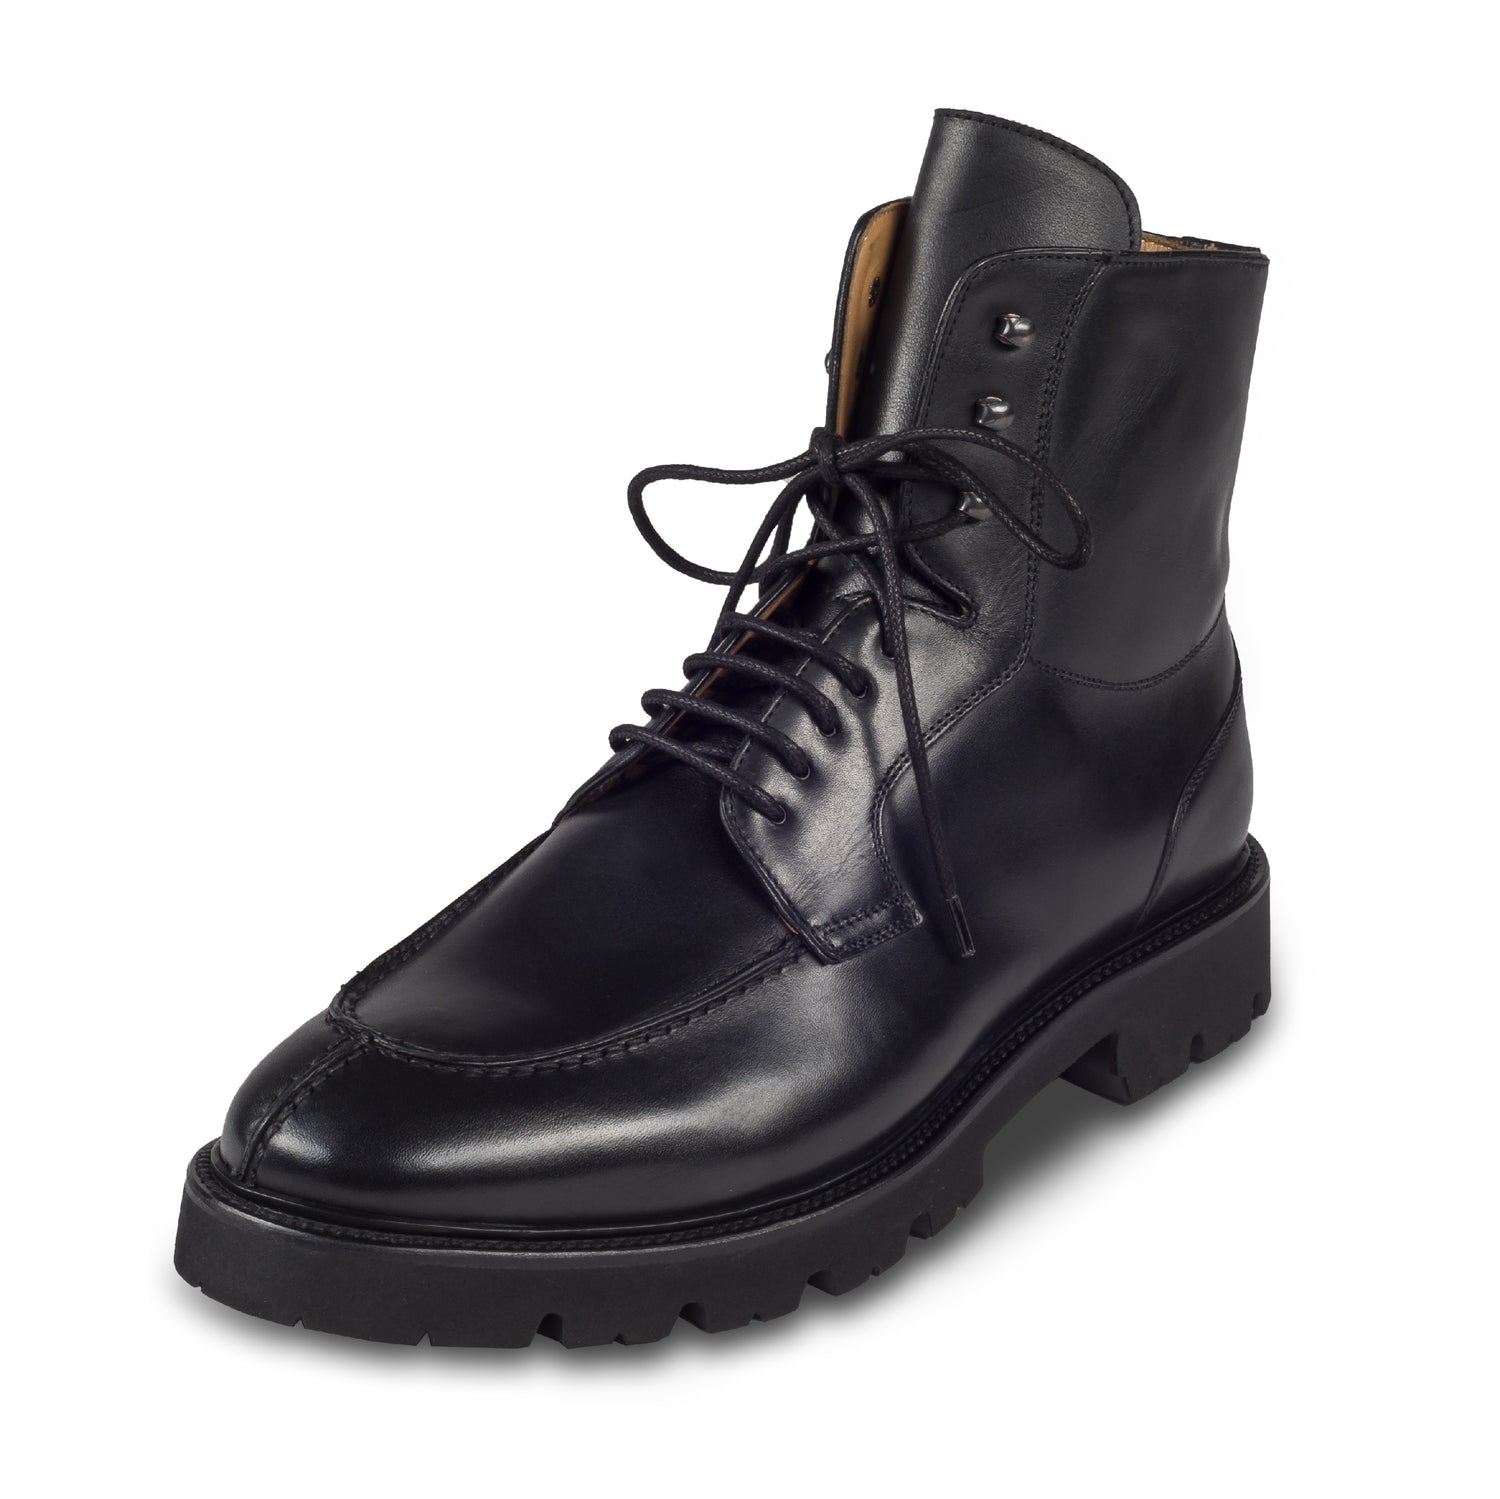 BRECOS - Italienische Herren Kalbsleder Schnür-Stiefelette in schwarz mit Reißverschluß. Mit Gummisohle. Handgefertigt und durchgenäht. Schräge Ansicht linker Schuh.